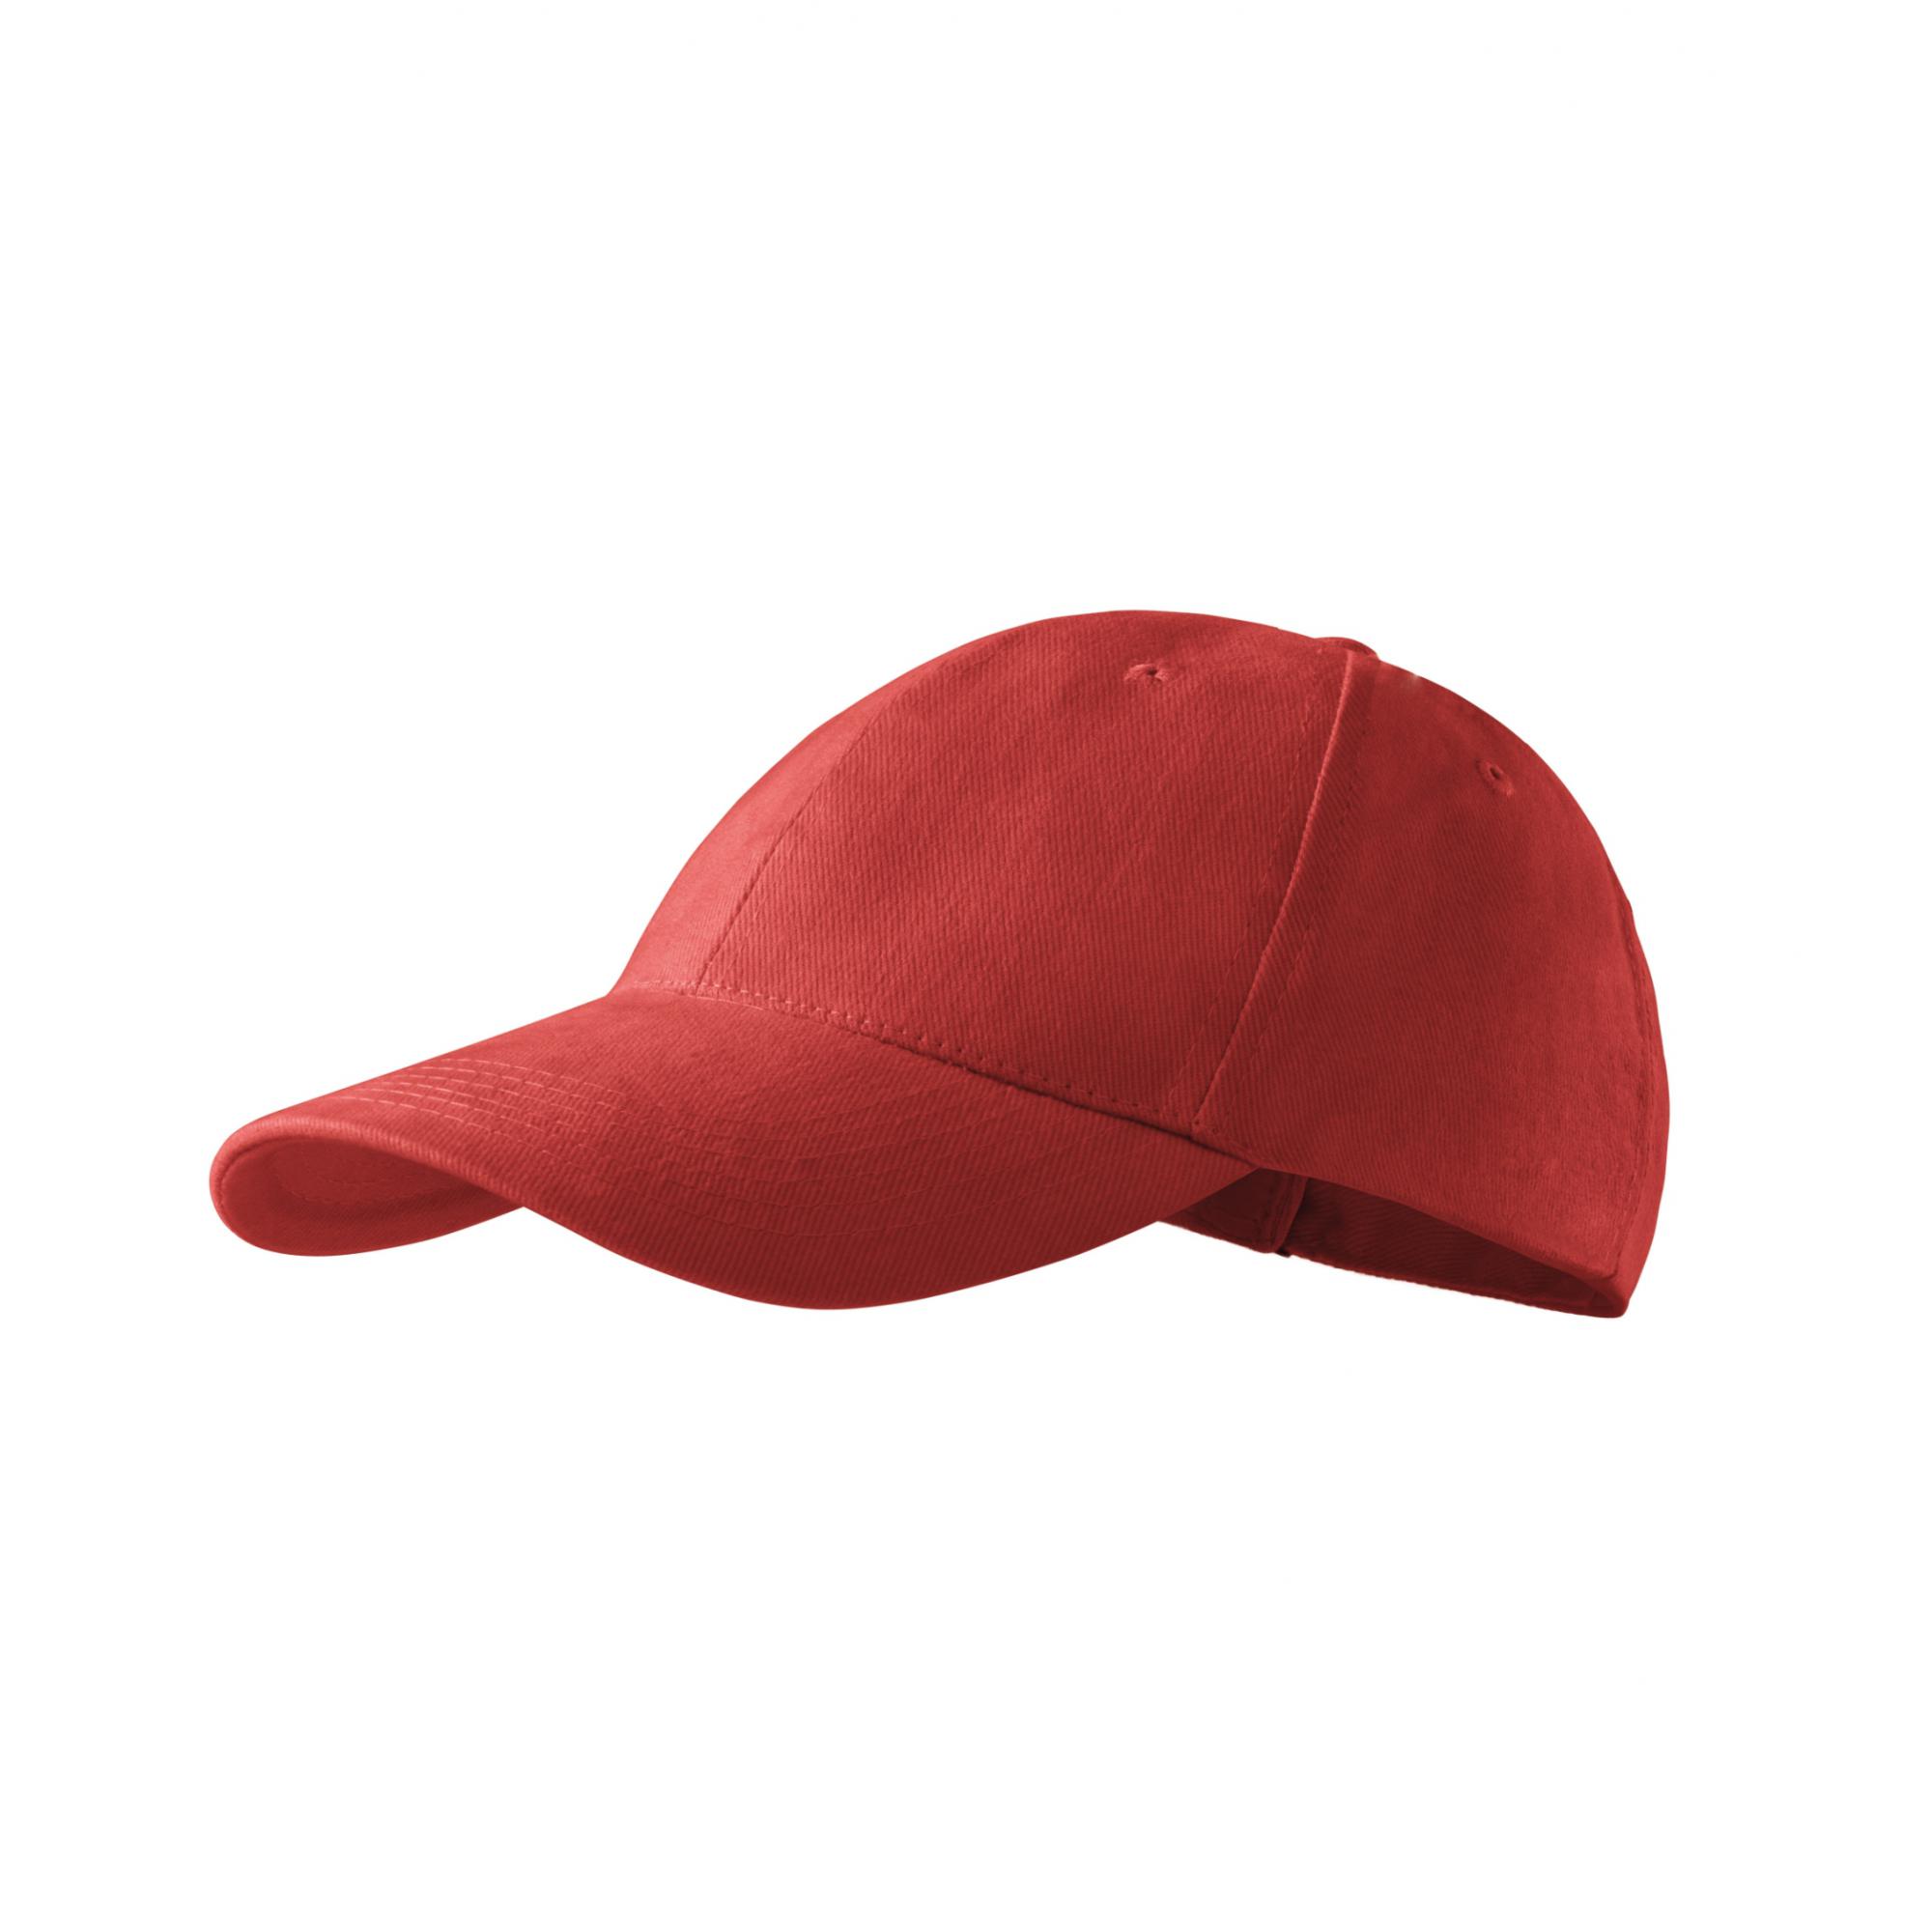 Şapcă unisex 6P 305 Rosu bordo Marime universala